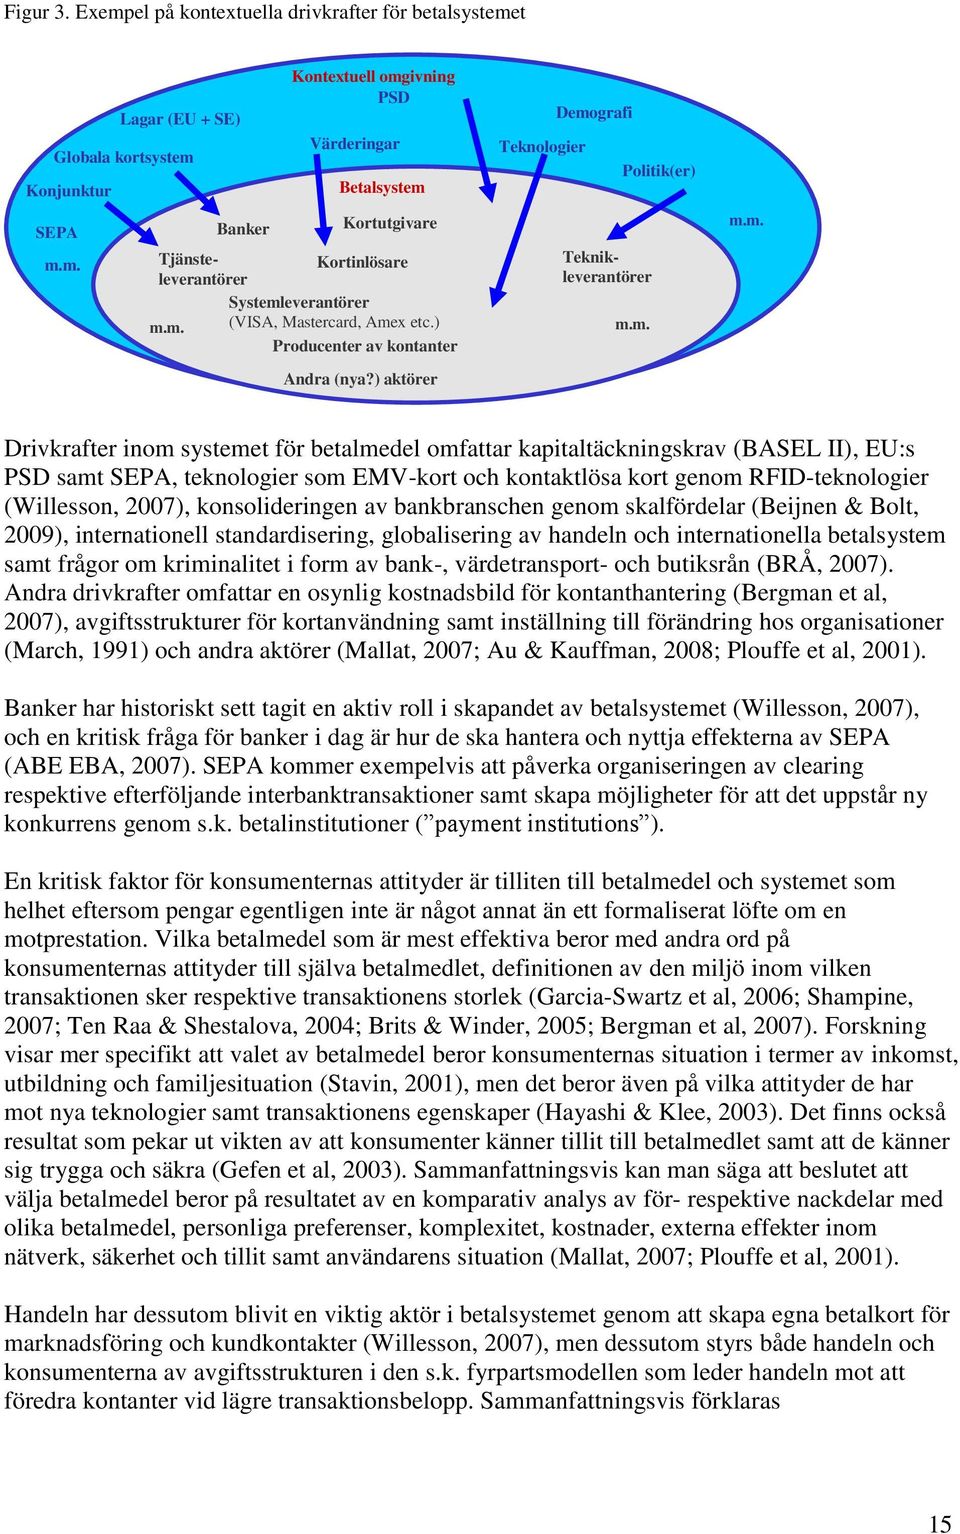 kapitaltäckningskrav (BASEL II), EU:s PSD samt SEPA, teknologier som EMV-kort och kontaktlösa kort genom RFID-teknologier (Willesson, 2007), konsolideringen av bankbranschen genom skalfördelar